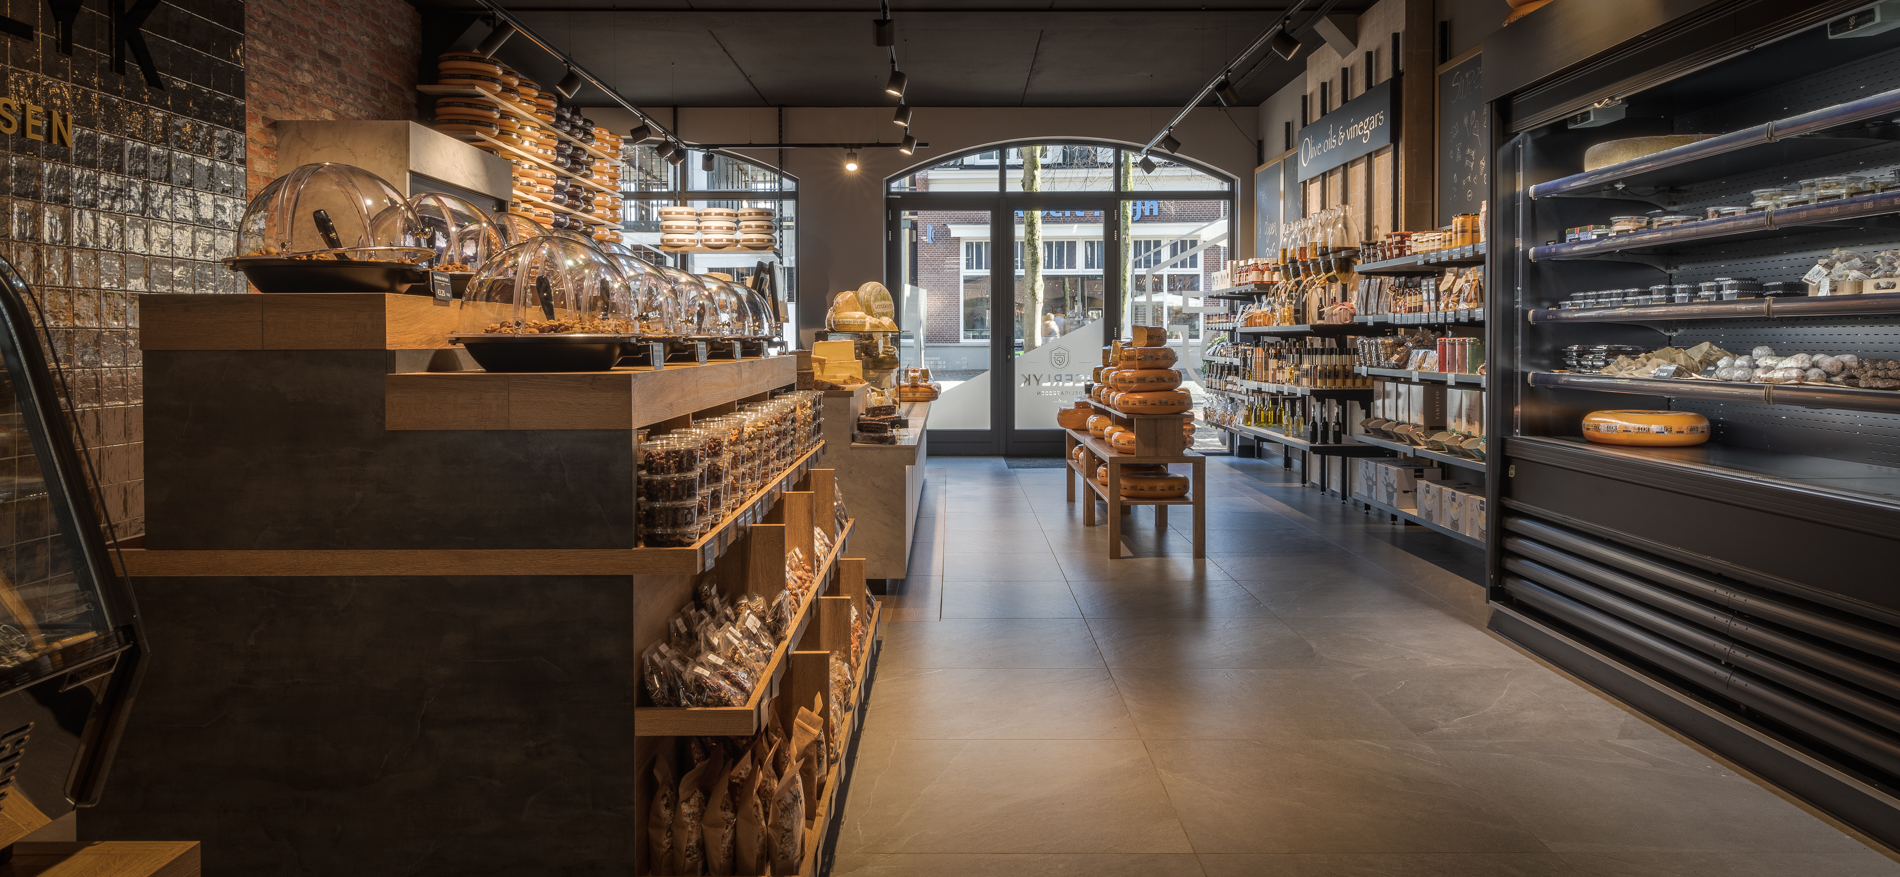 Heerlyk Delicatessen | Lunteren (NL) - Food and leisure